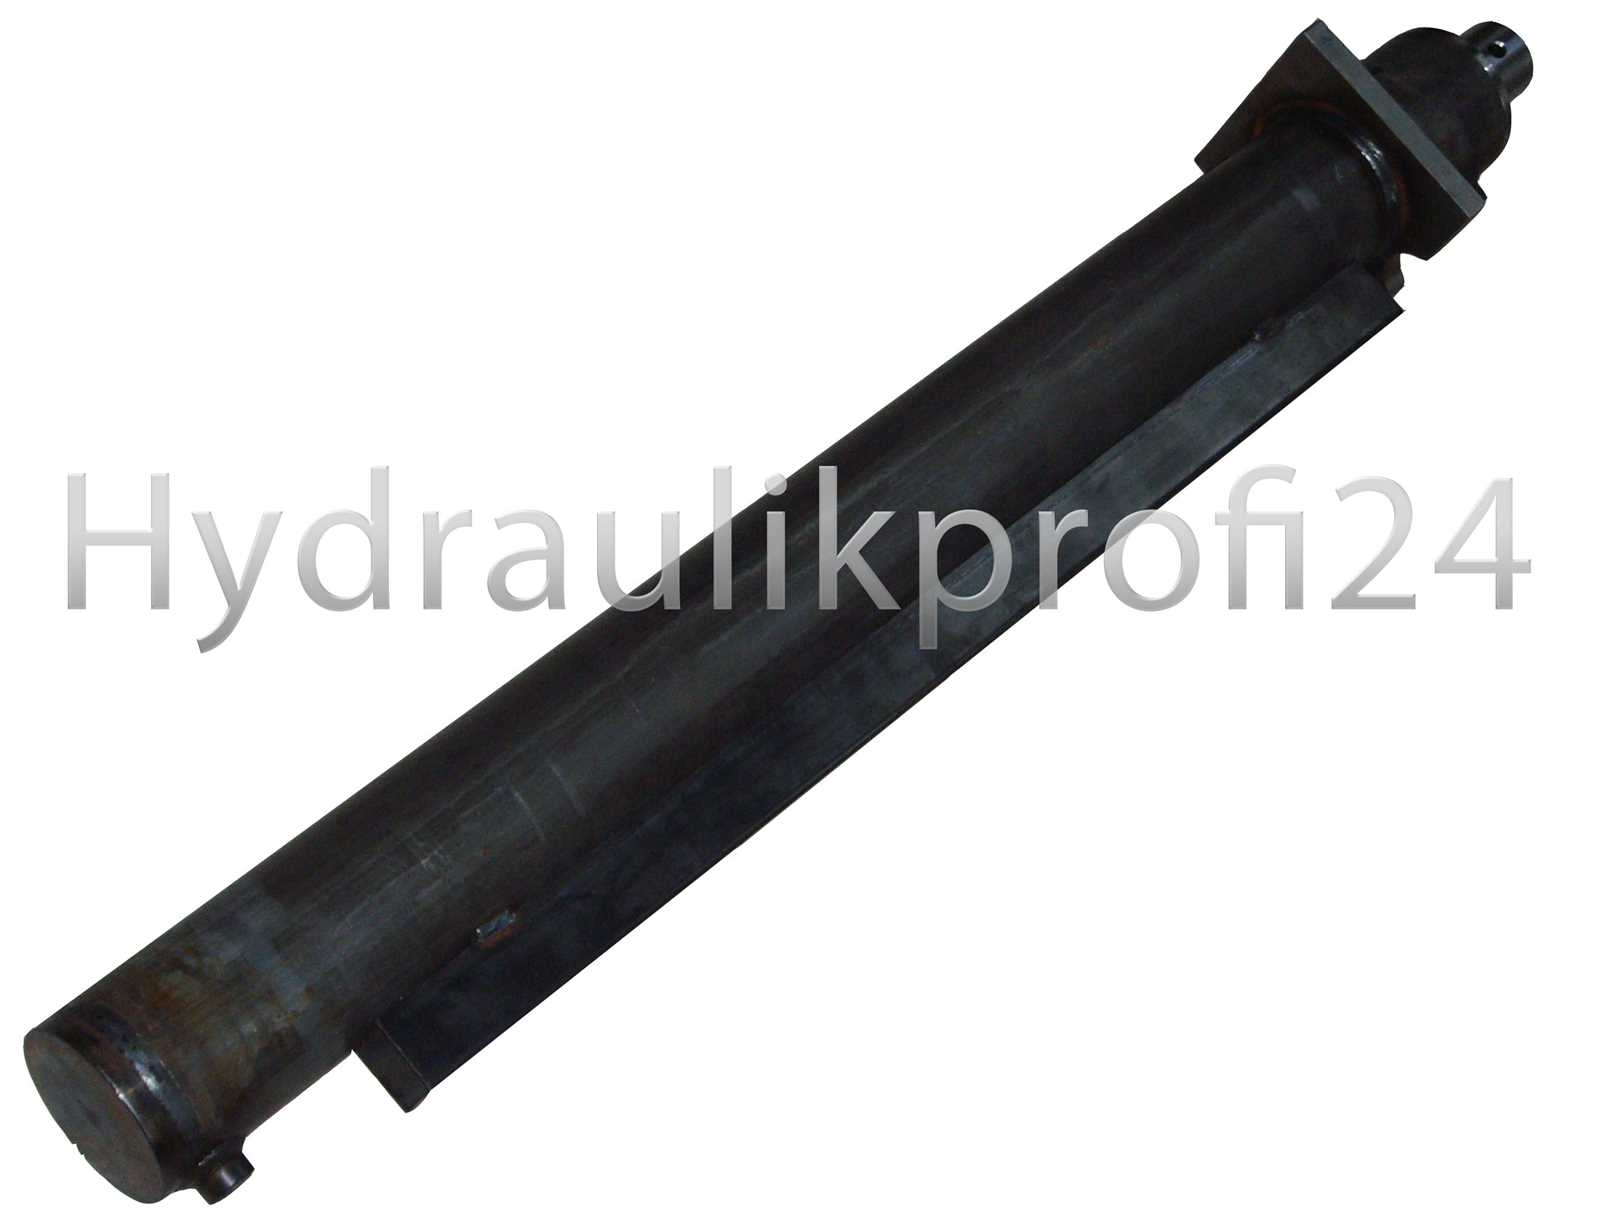 Hydraulikzylinder Holzspalter 28 T 80-120-1100 Flansch 200x200x25 mm